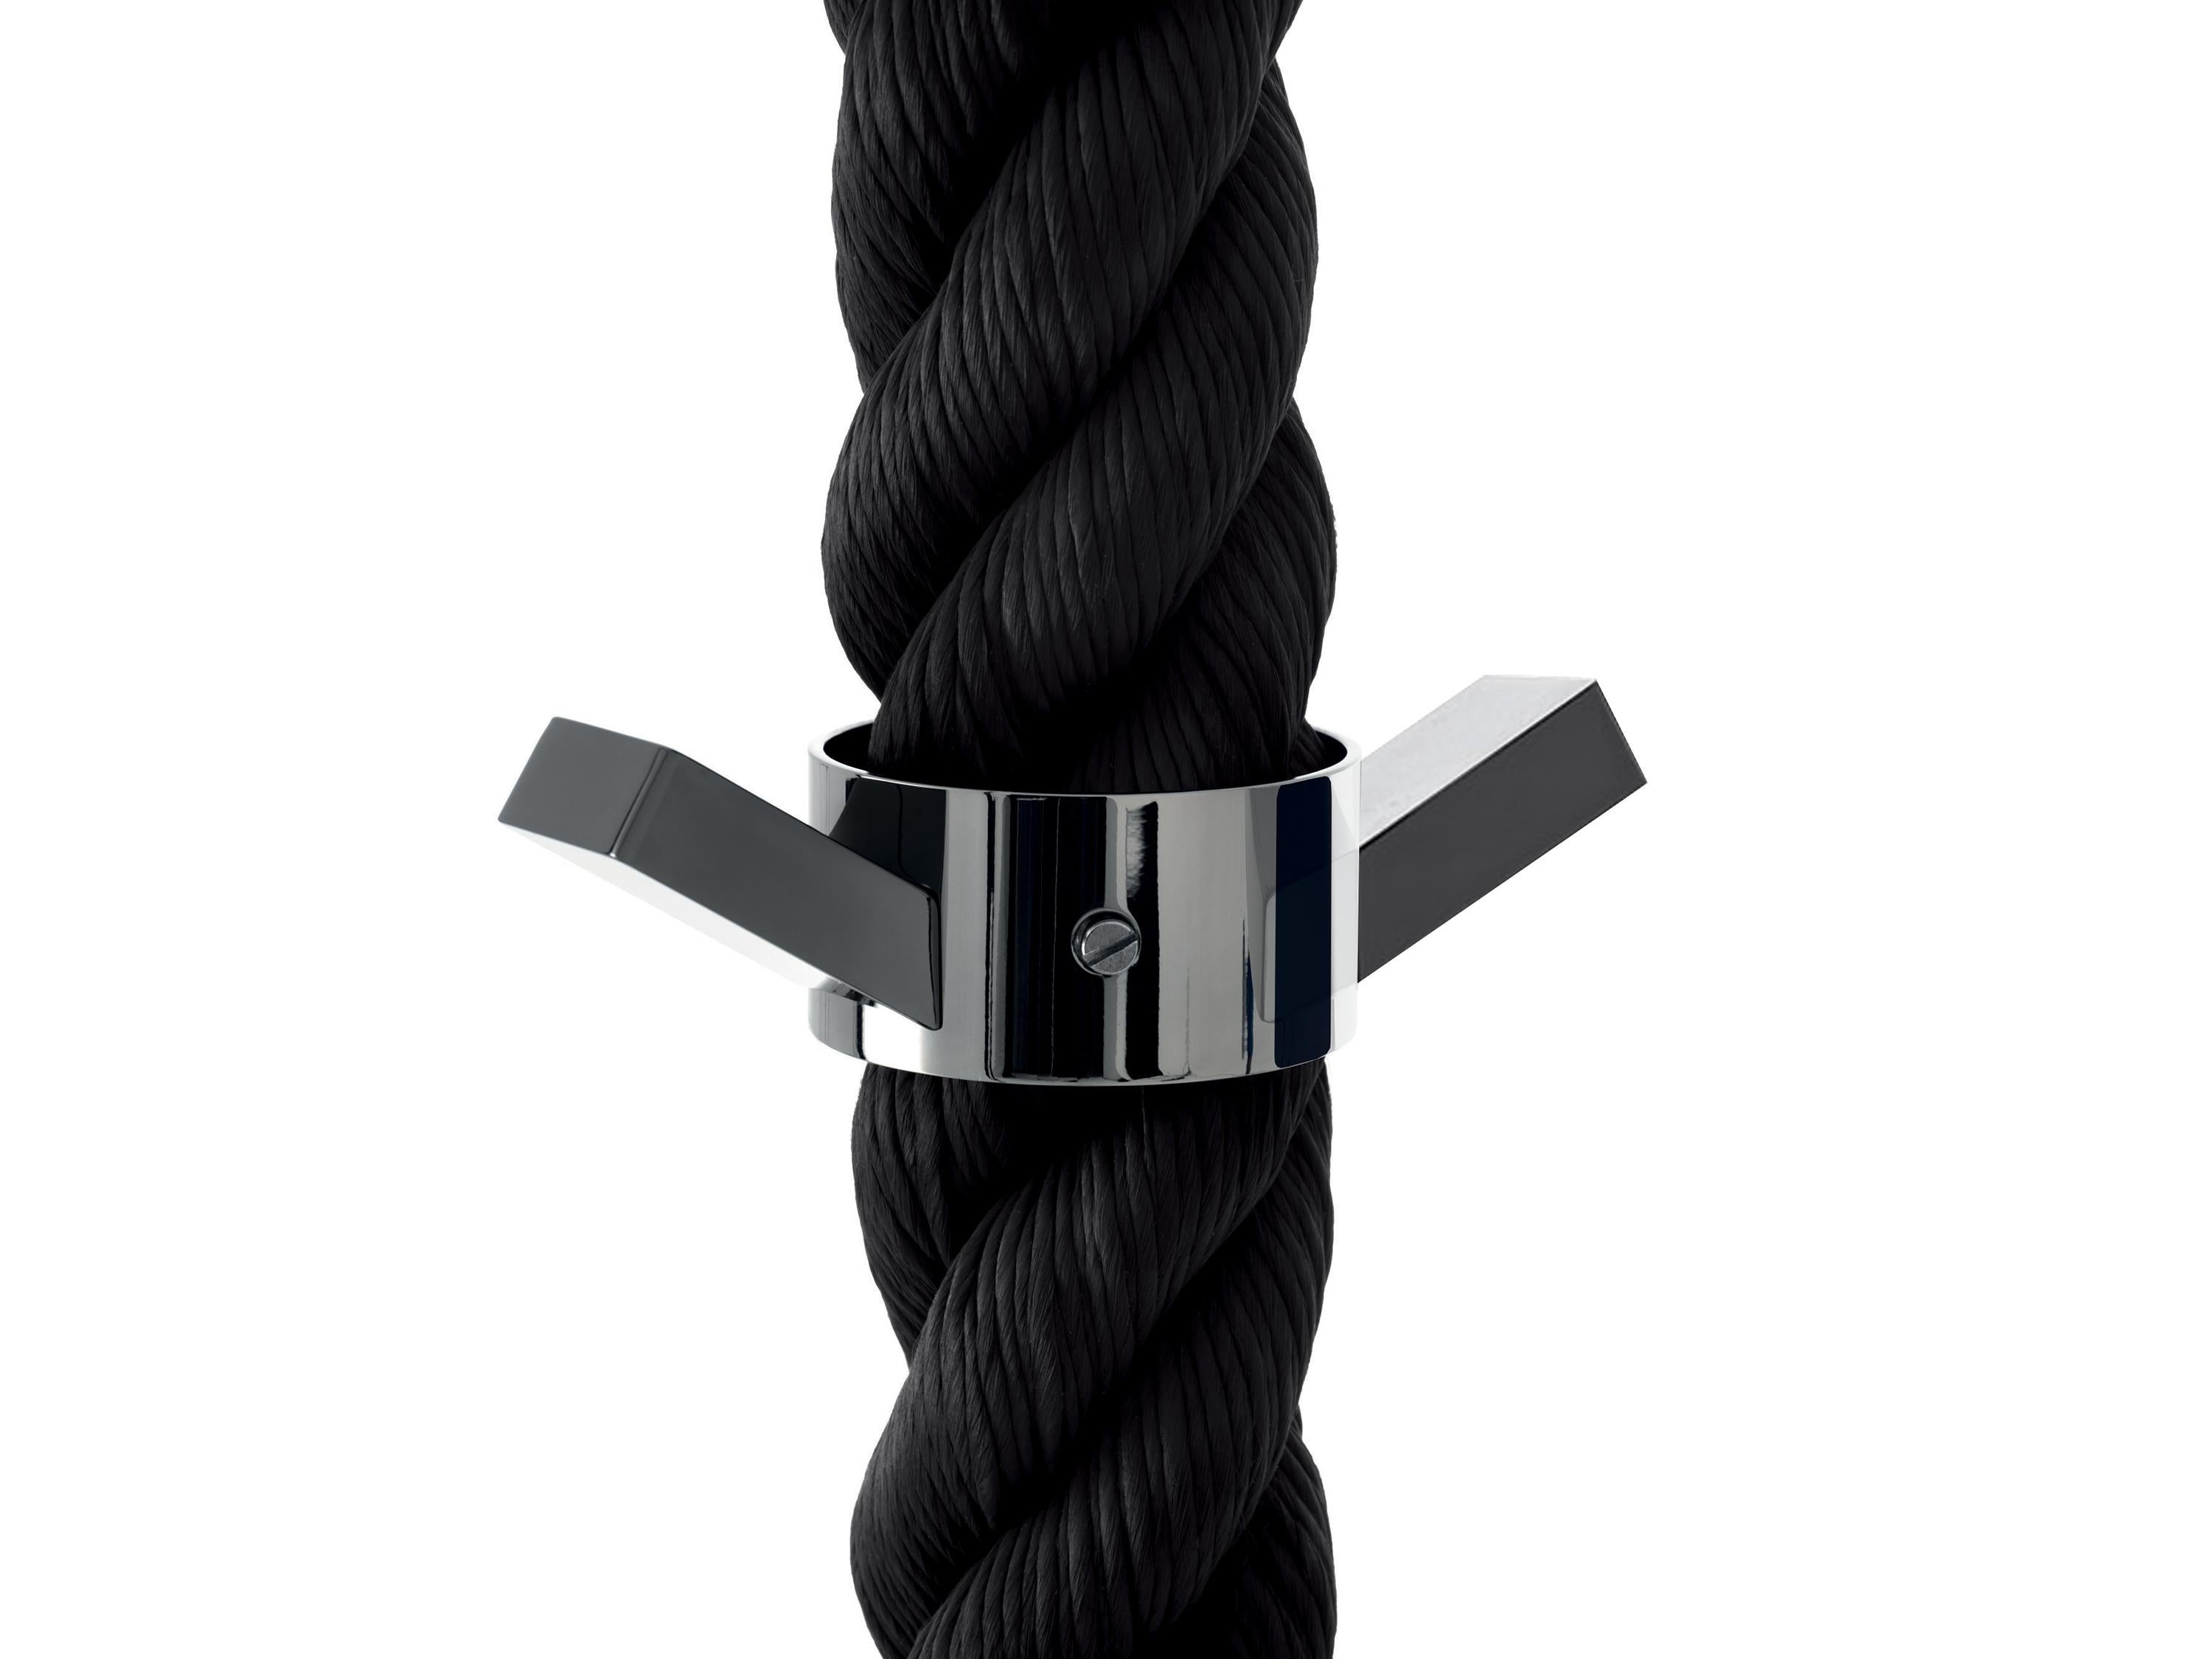 For Sale: Black (Black Rope with Nickel Hardware) Opinion Ciatti La Cima 3 Clothes Hanger